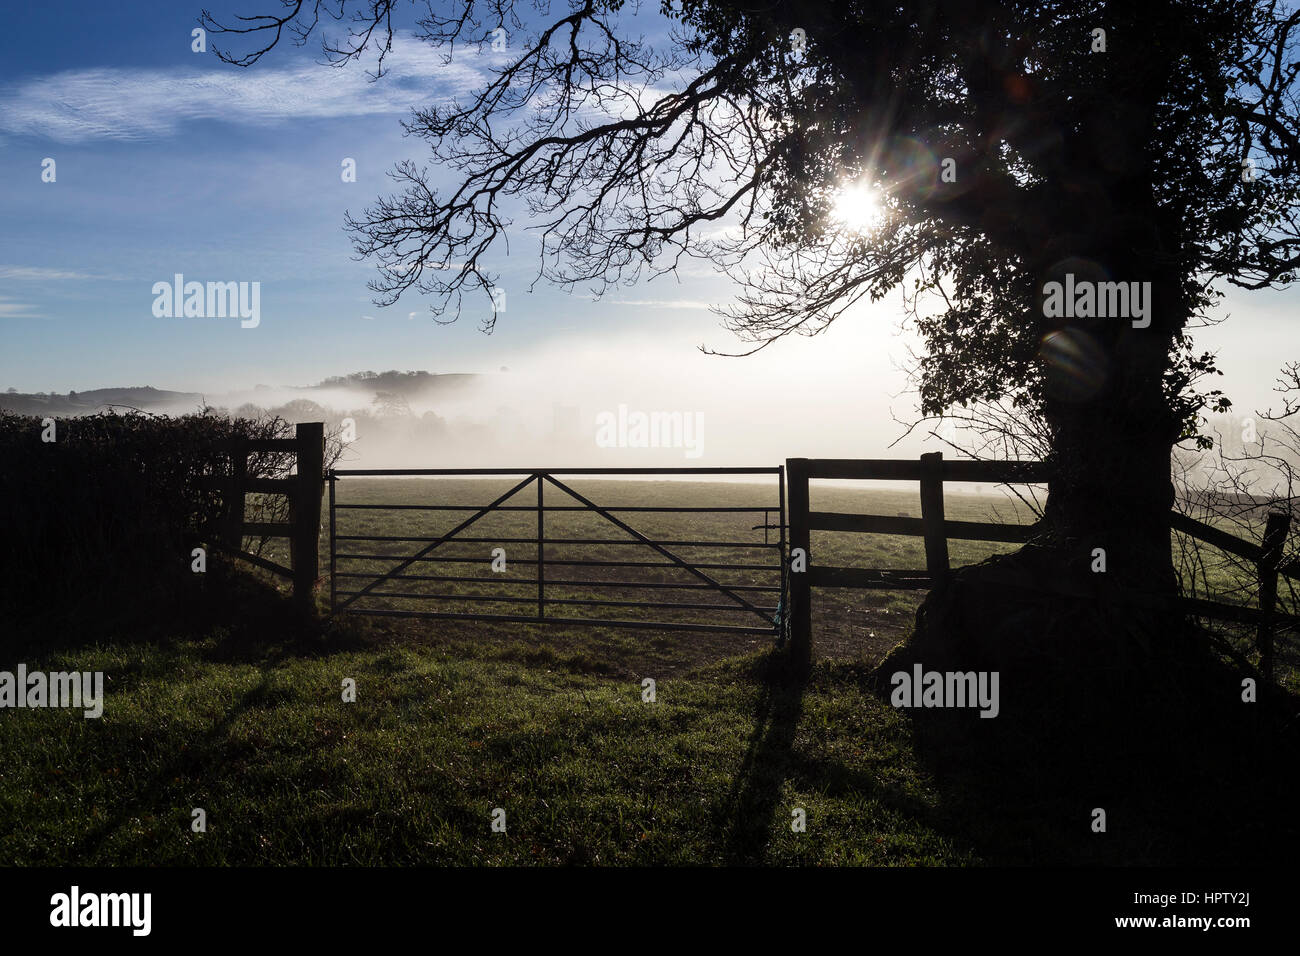 Pecore pascolano i terreni agricoli attorno a Stoke Gabriel nel sud prosciutti Devon Foto Stock